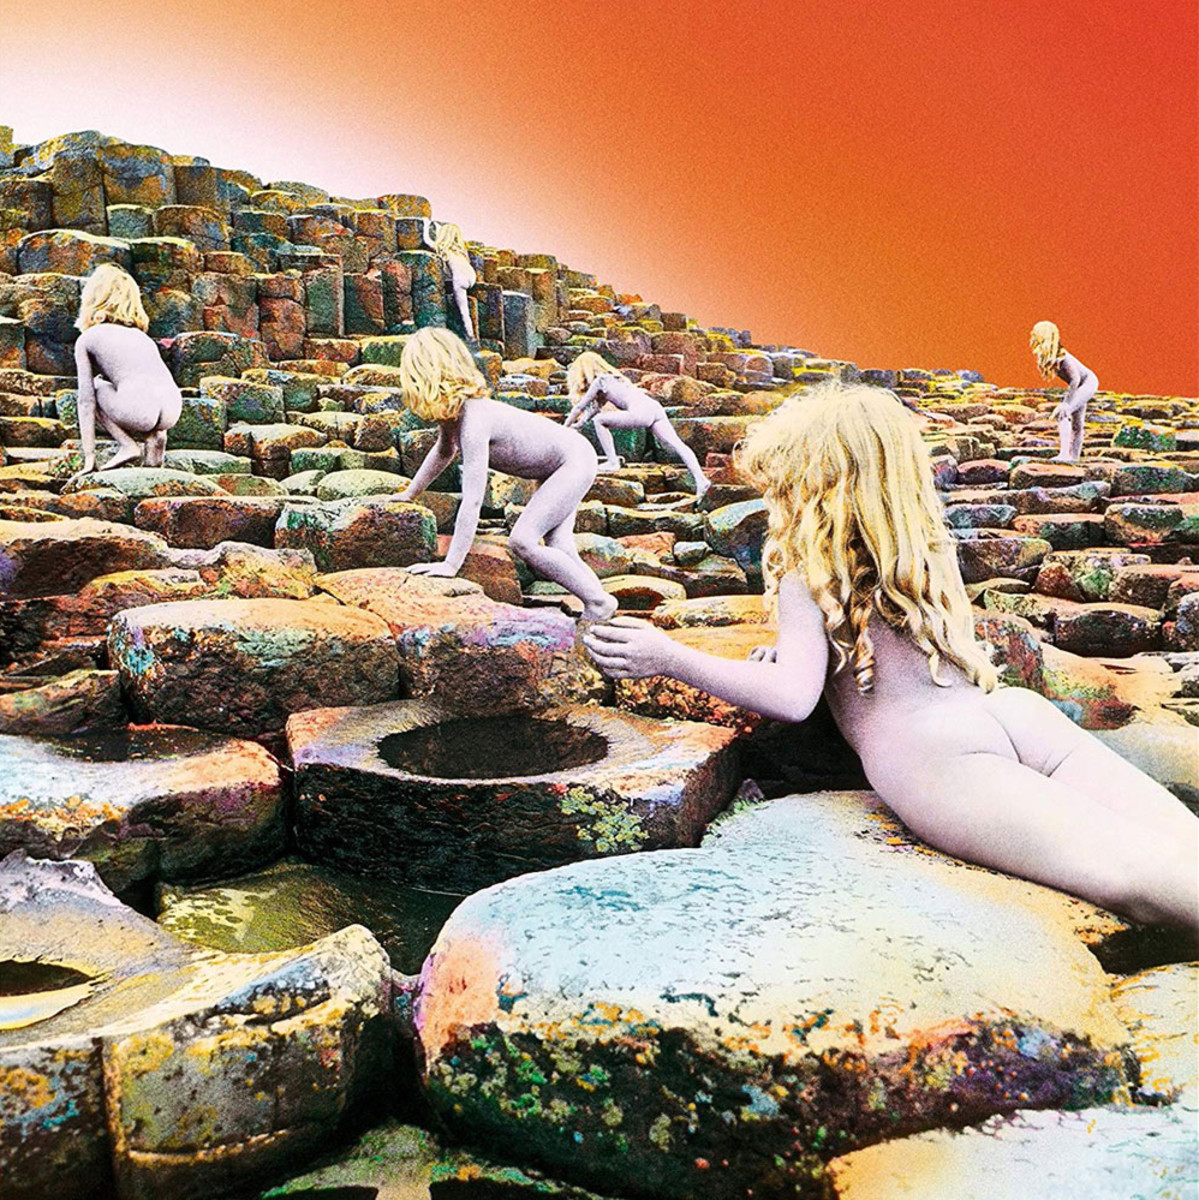 Led Zeppelin's Houses of the Holy album cover art